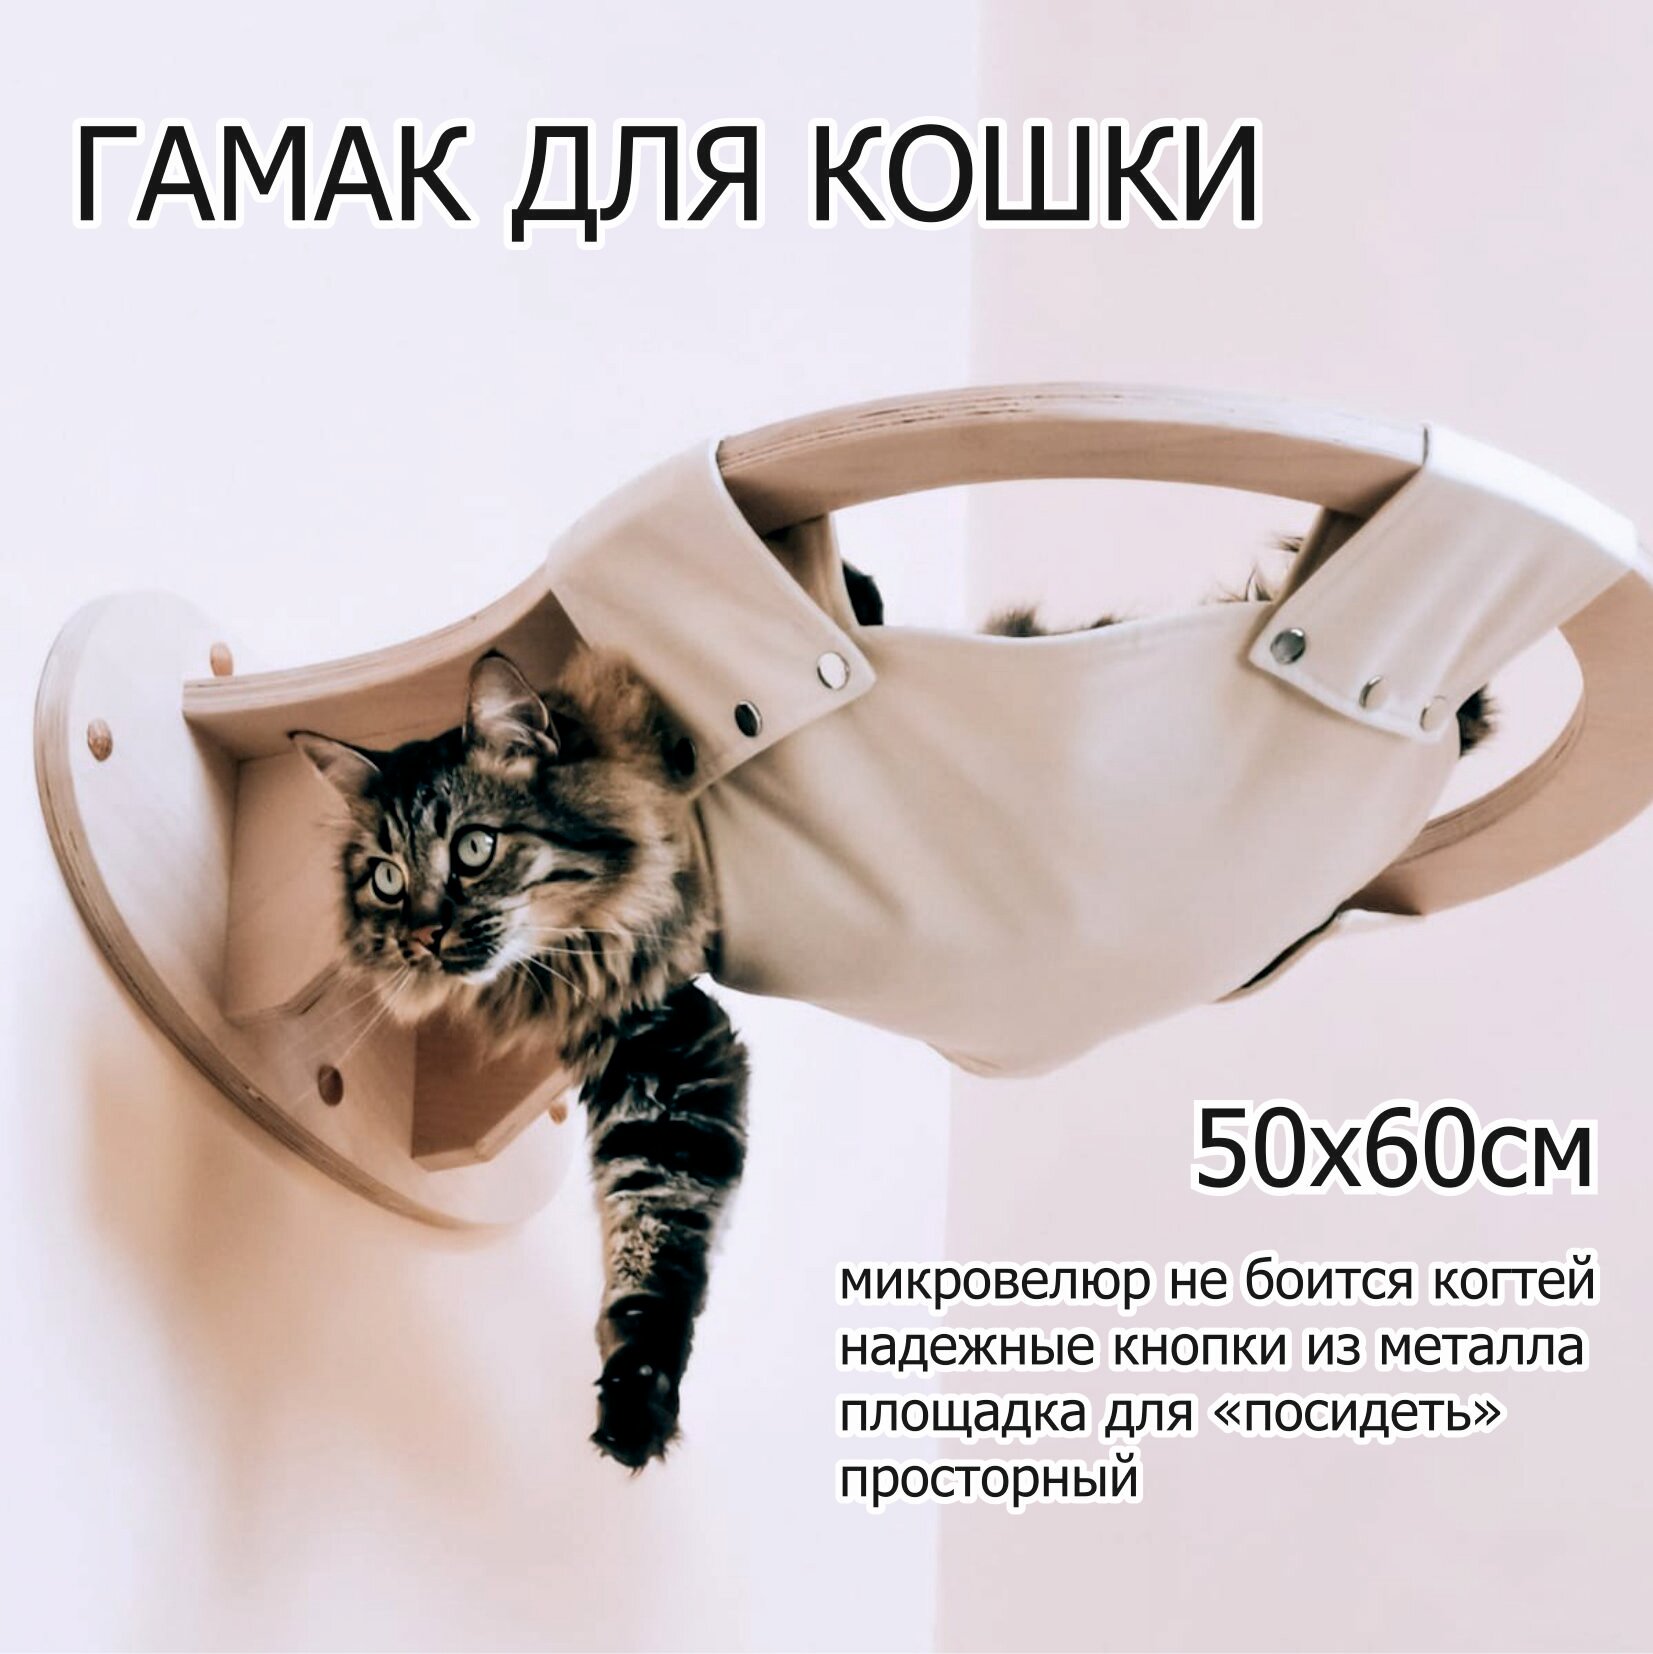 Лежанка настенная "гамак" для кошек FitKot, в натуральном цвете, диаметр 50см